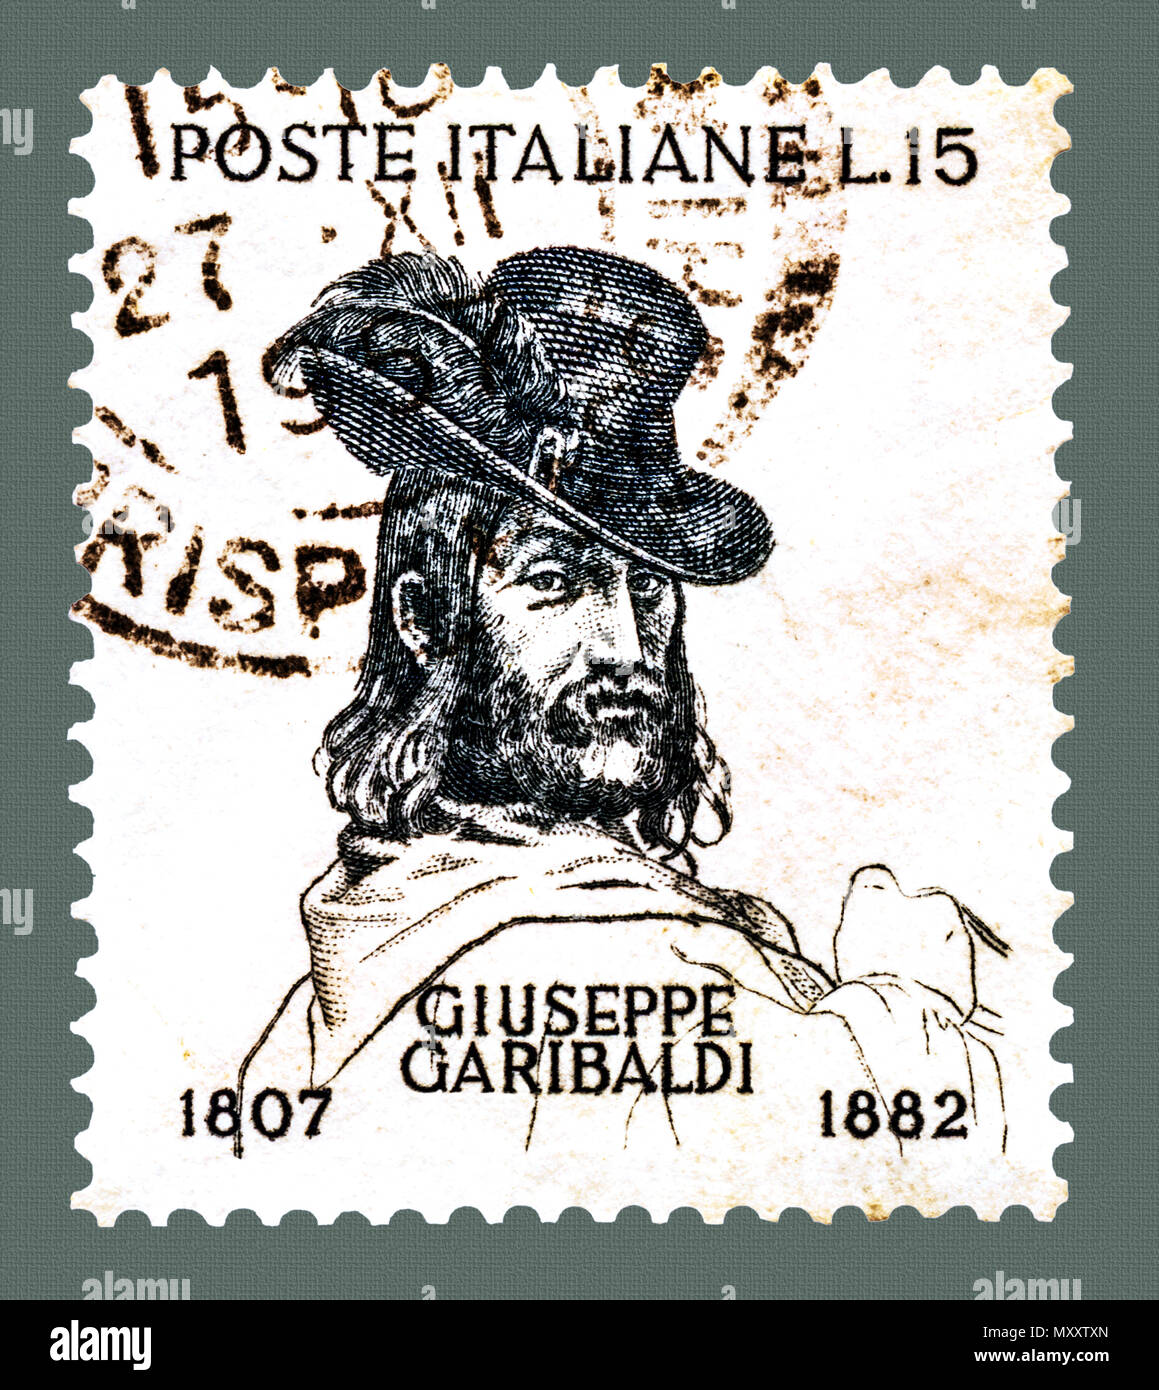 Giuseppe Garibaldi che indossa il cappello con piuma: Italiano francobollo Foto Stock